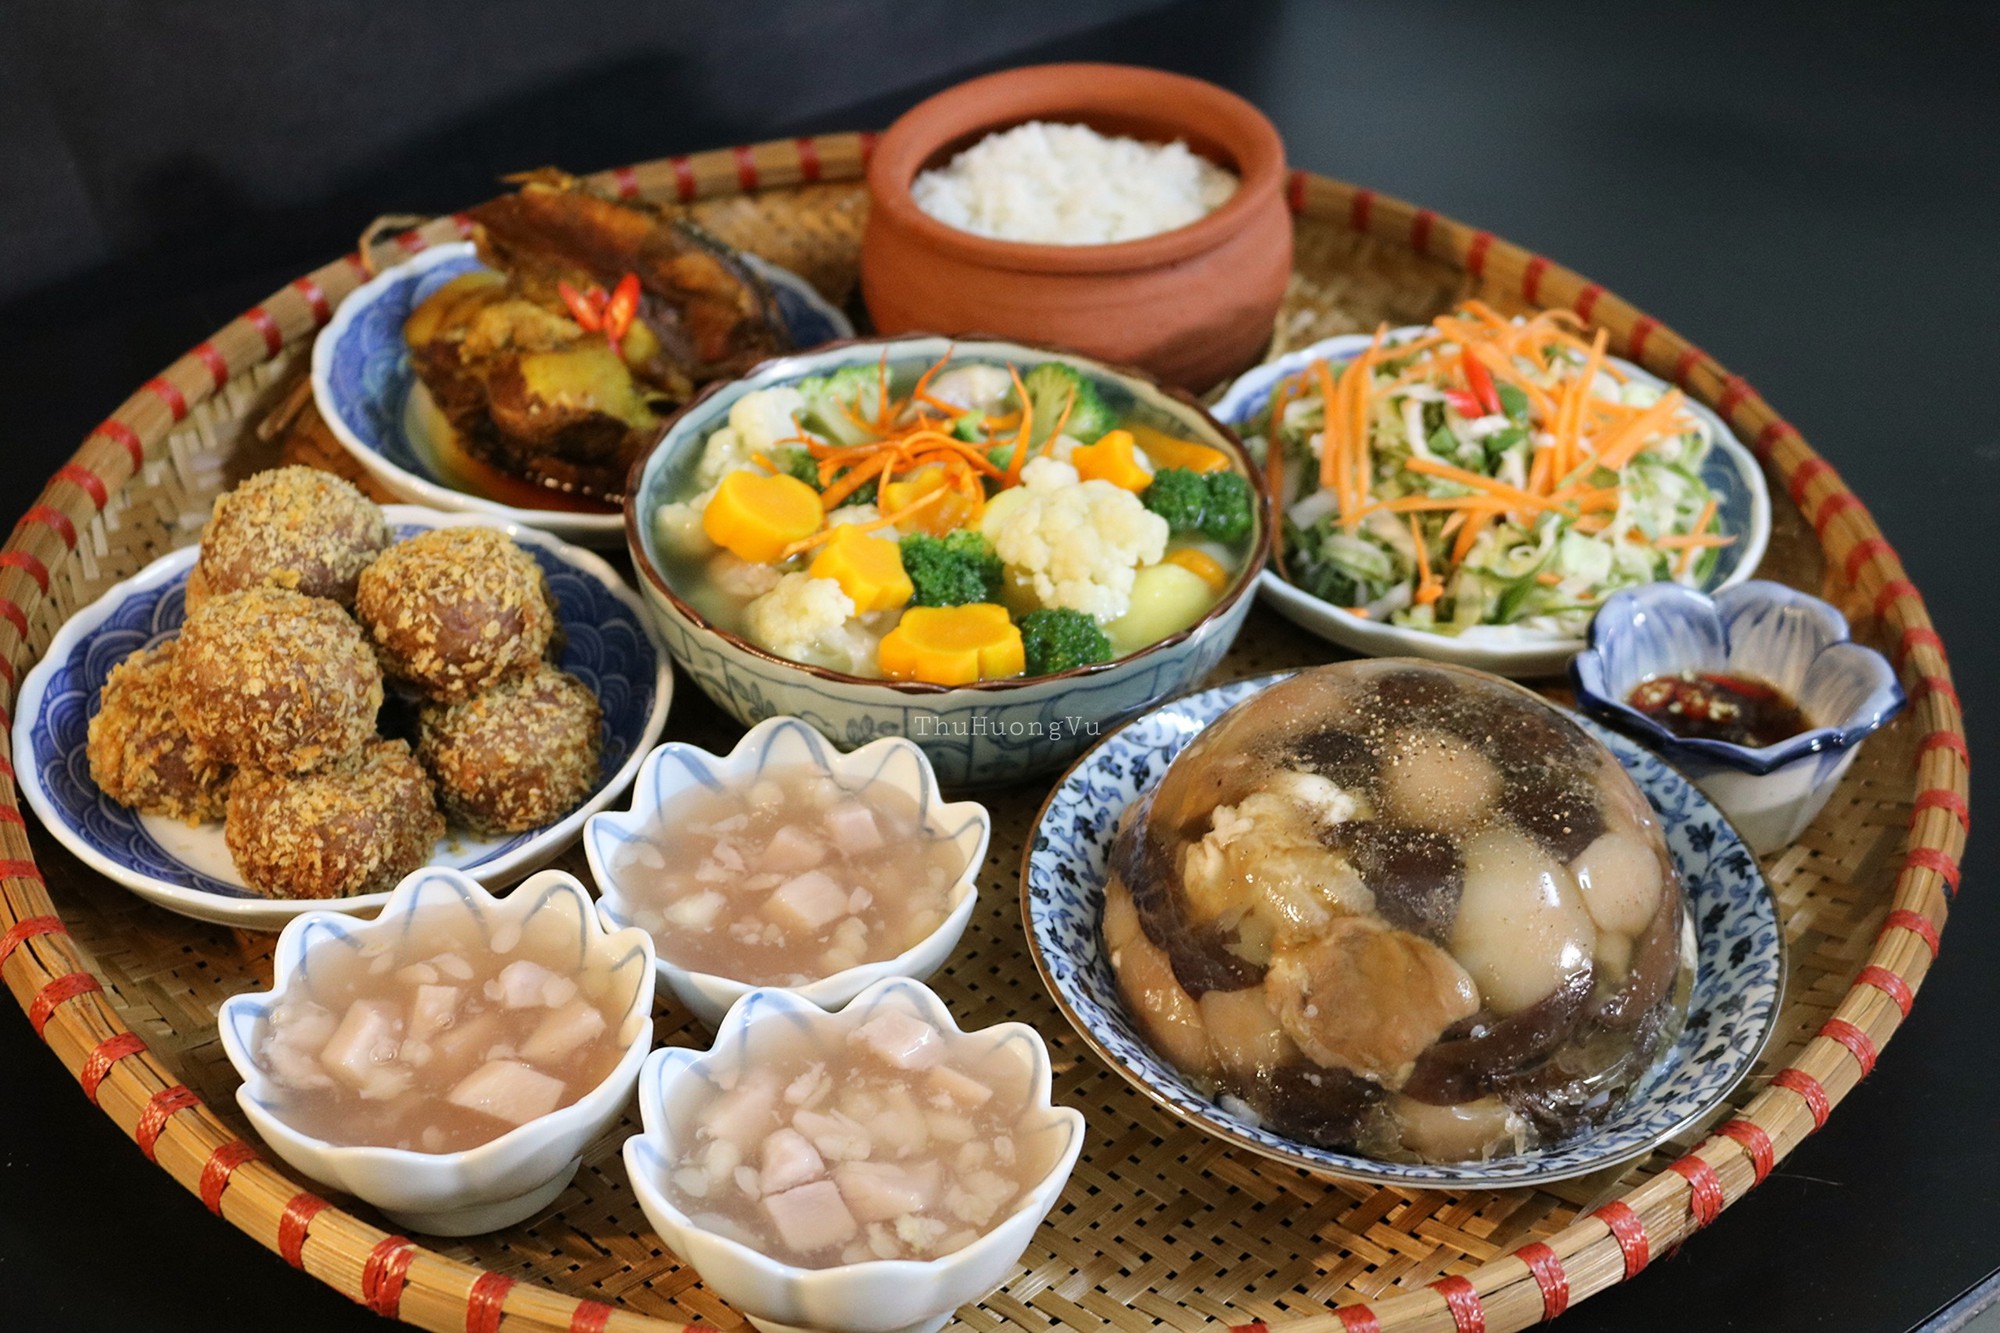 Nấu thịt đông là một nét văn hóa ẩm thực đặc trưng ở miền Bắc. Chúng ta sẽ được chiêm ngưỡng những con bò Sumo thịt đông được kết thành từng bánh tròn, hay những phần thịt đông đẹp mắt. Đó là cơ hội để tìm hiểu về món ăn truyền thống của Việt Nam.